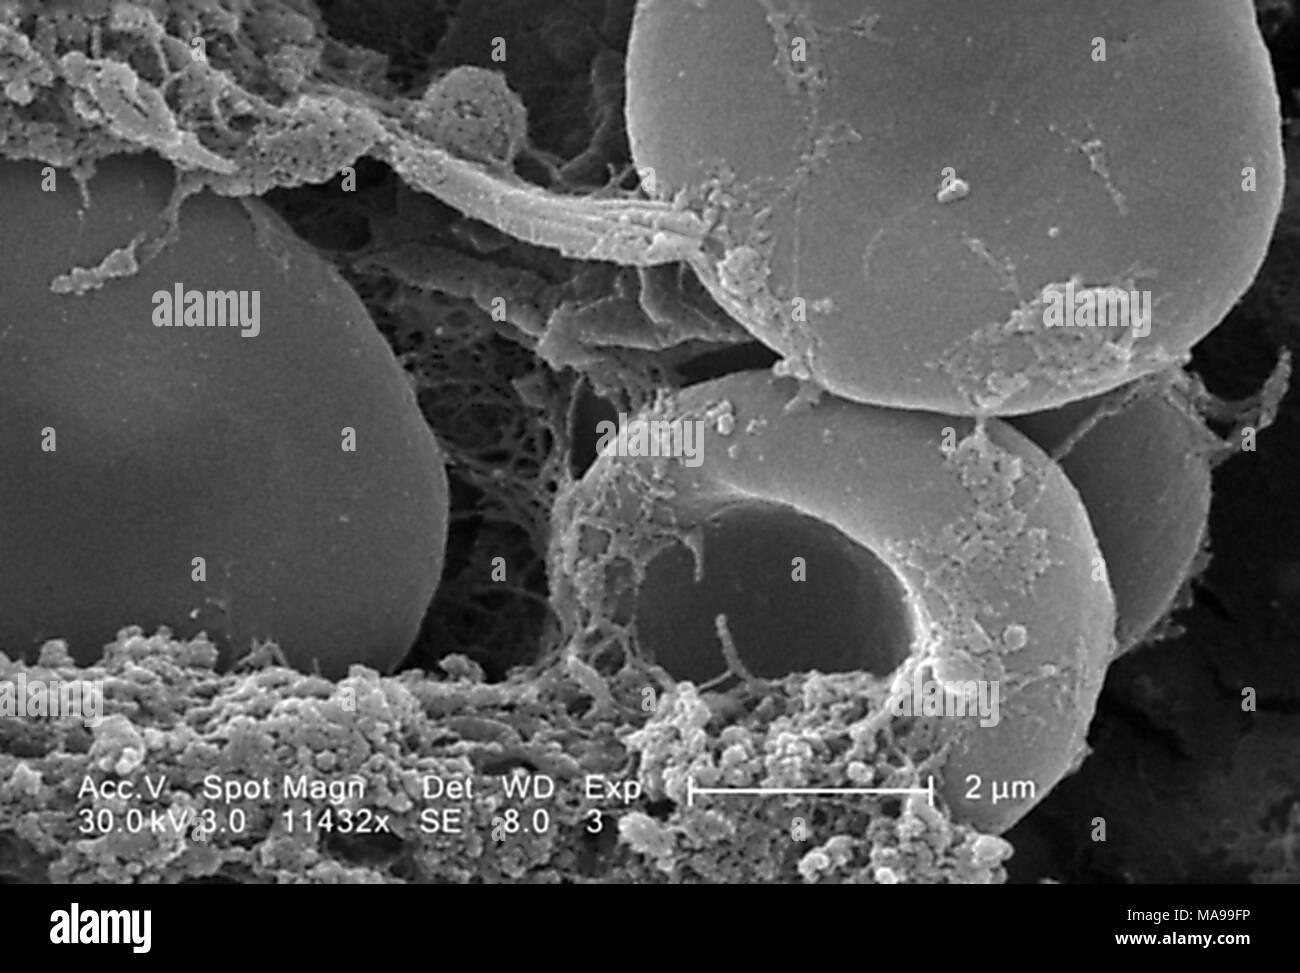 Le cellule rosse del sangue sulla superficie luminale dell'inabitazione catetere vascolare ha rivelato nella scansione al microscopio elettronico (SEM) immagine Immagine cortesia dei Centri per il controllo delle malattie (CDC) / Janice Haney Carr, 2005. () Foto Stock